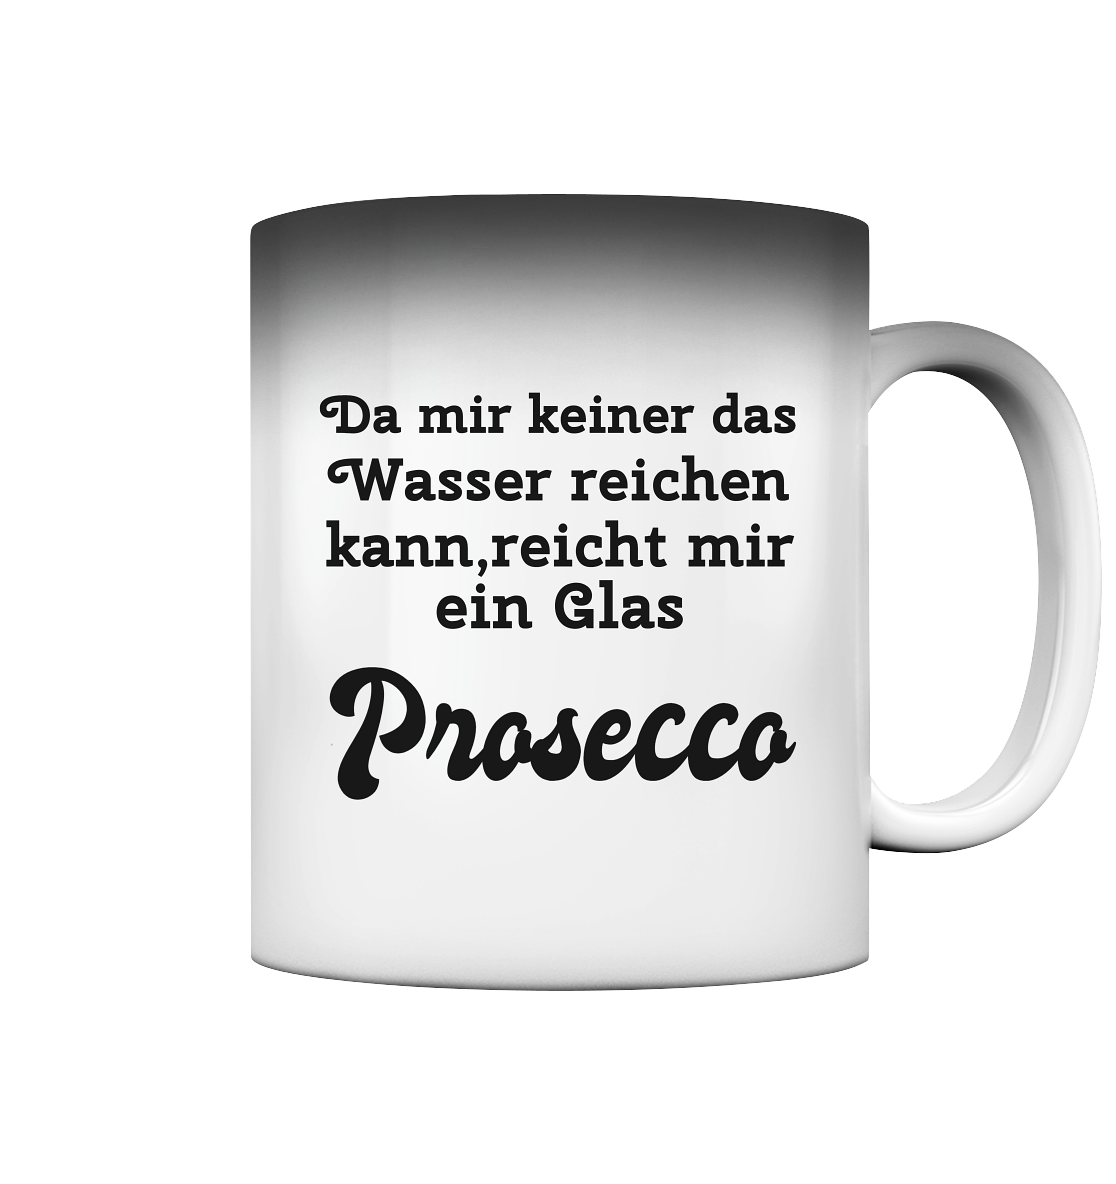 Da mir keiner das Wasser reichen kann, reicht mir ein Glas Prosecco -Designe Munich Palms  - Magic Mug